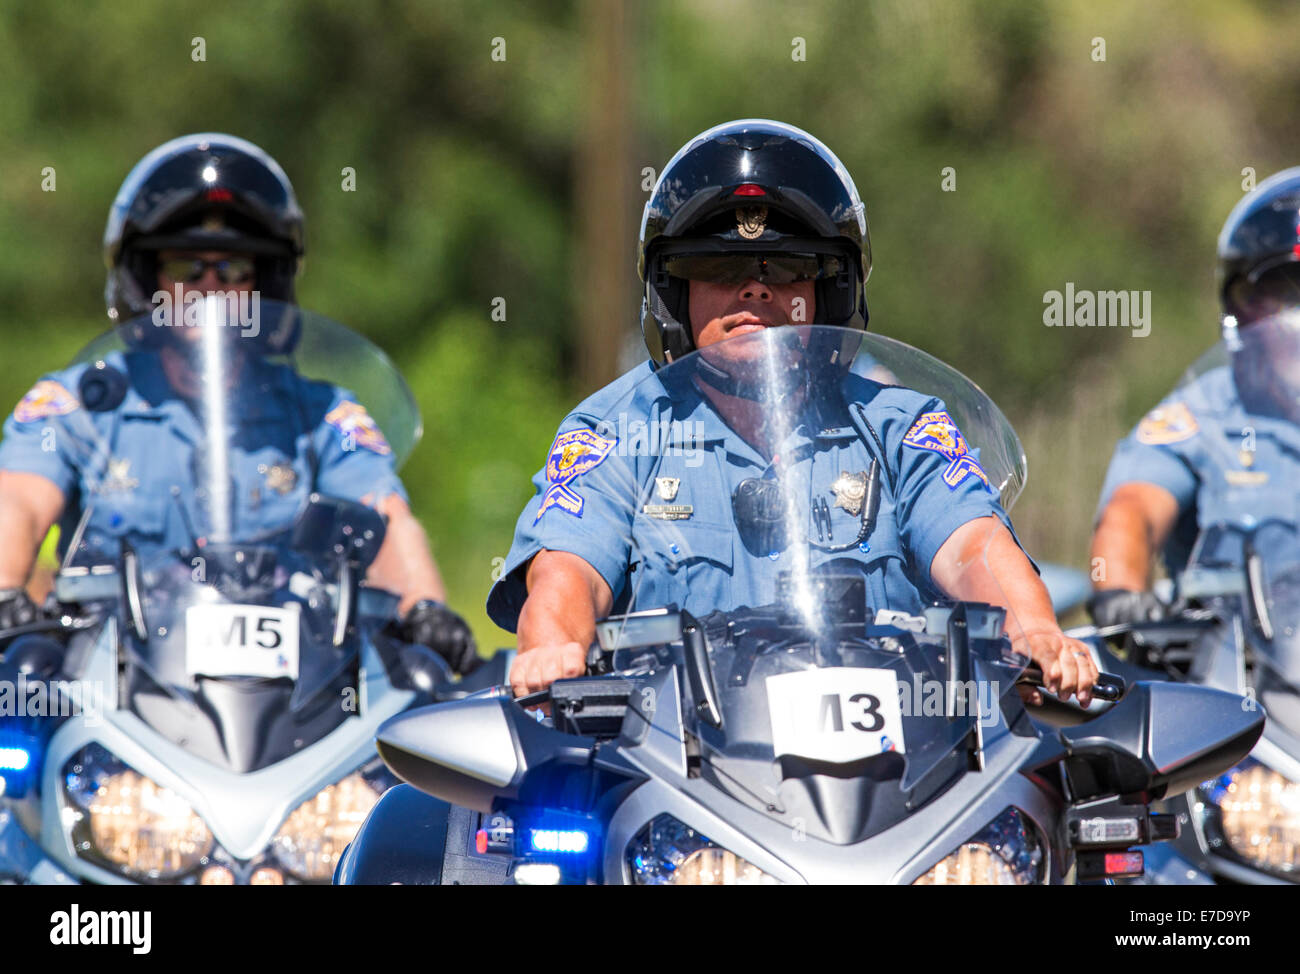 Colorado Polizia di Stato motocicli, USA Pro Challenge bike race, stadio 3, central Colorado, STATI UNITI D'AMERICA Foto Stock